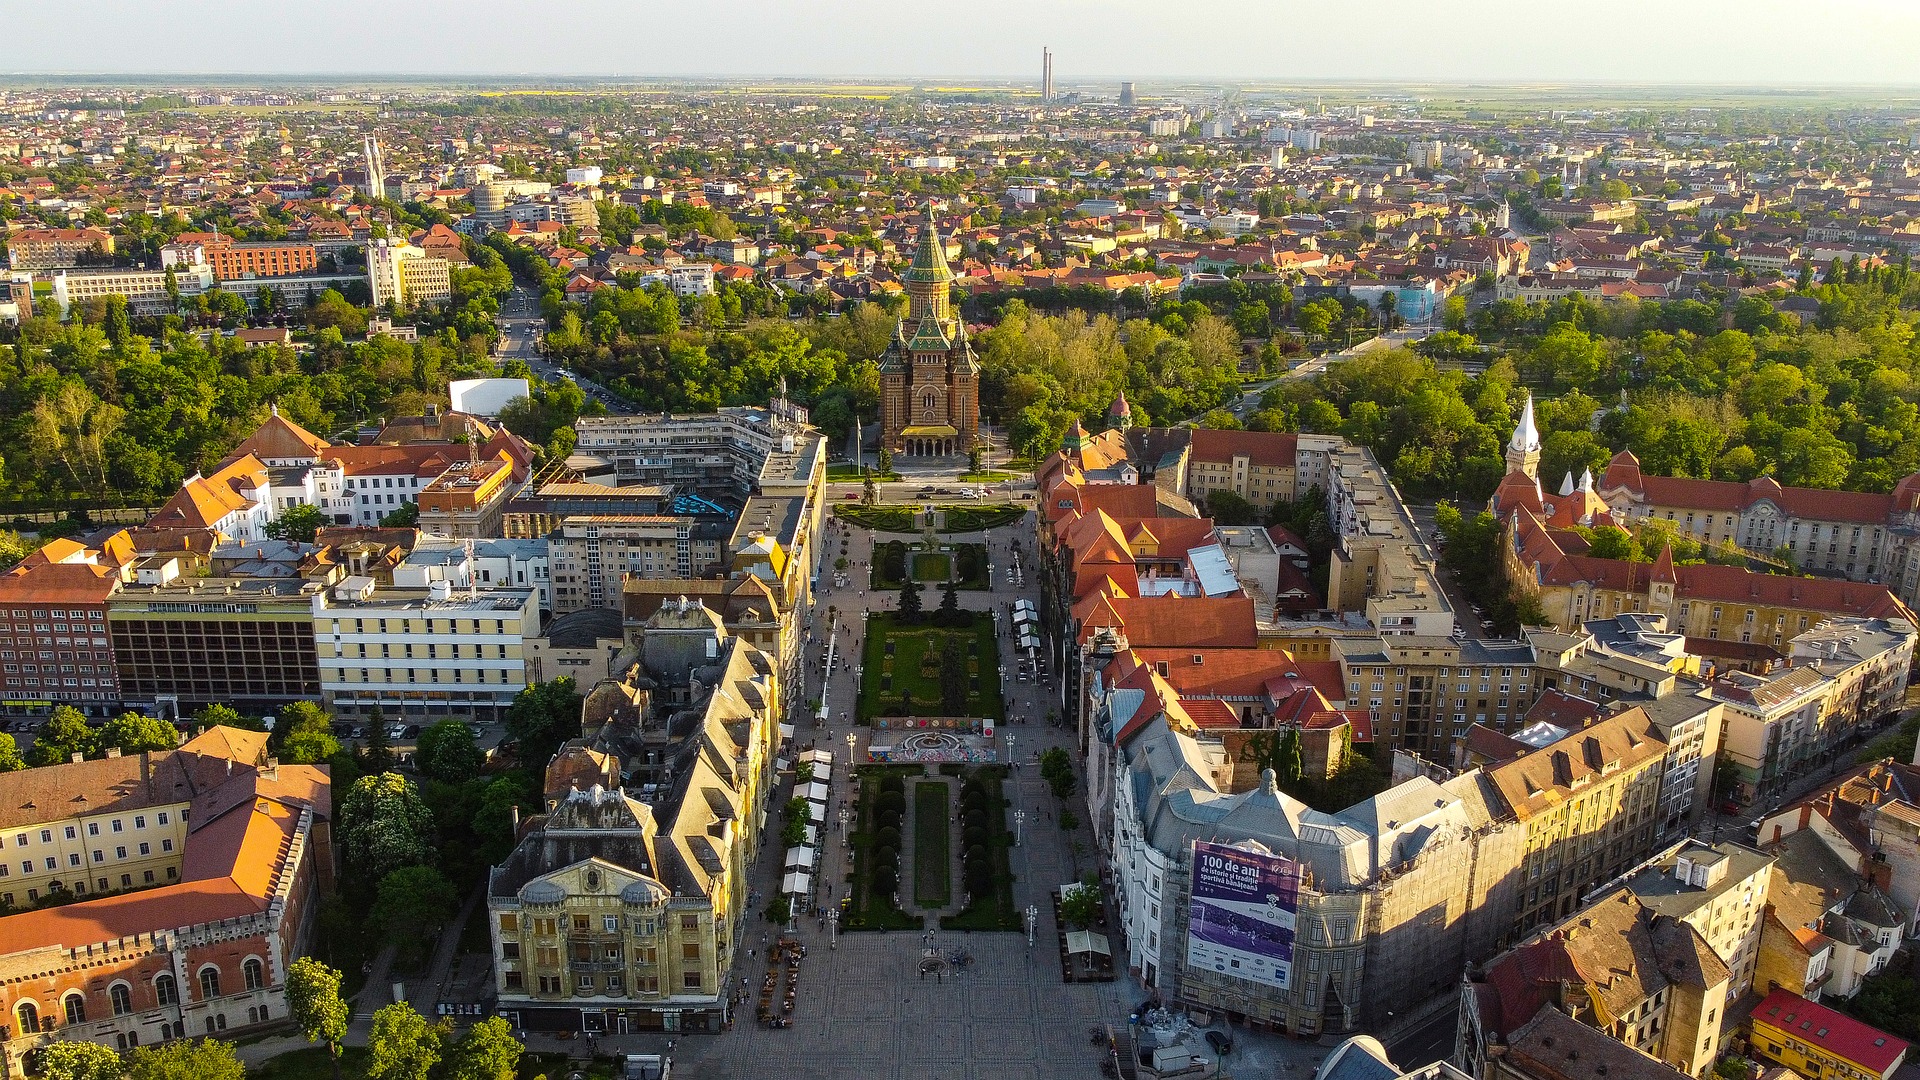 Câteva motive pentru care merită să vizitezi Timișoara – Capitală Europeană a Culturii